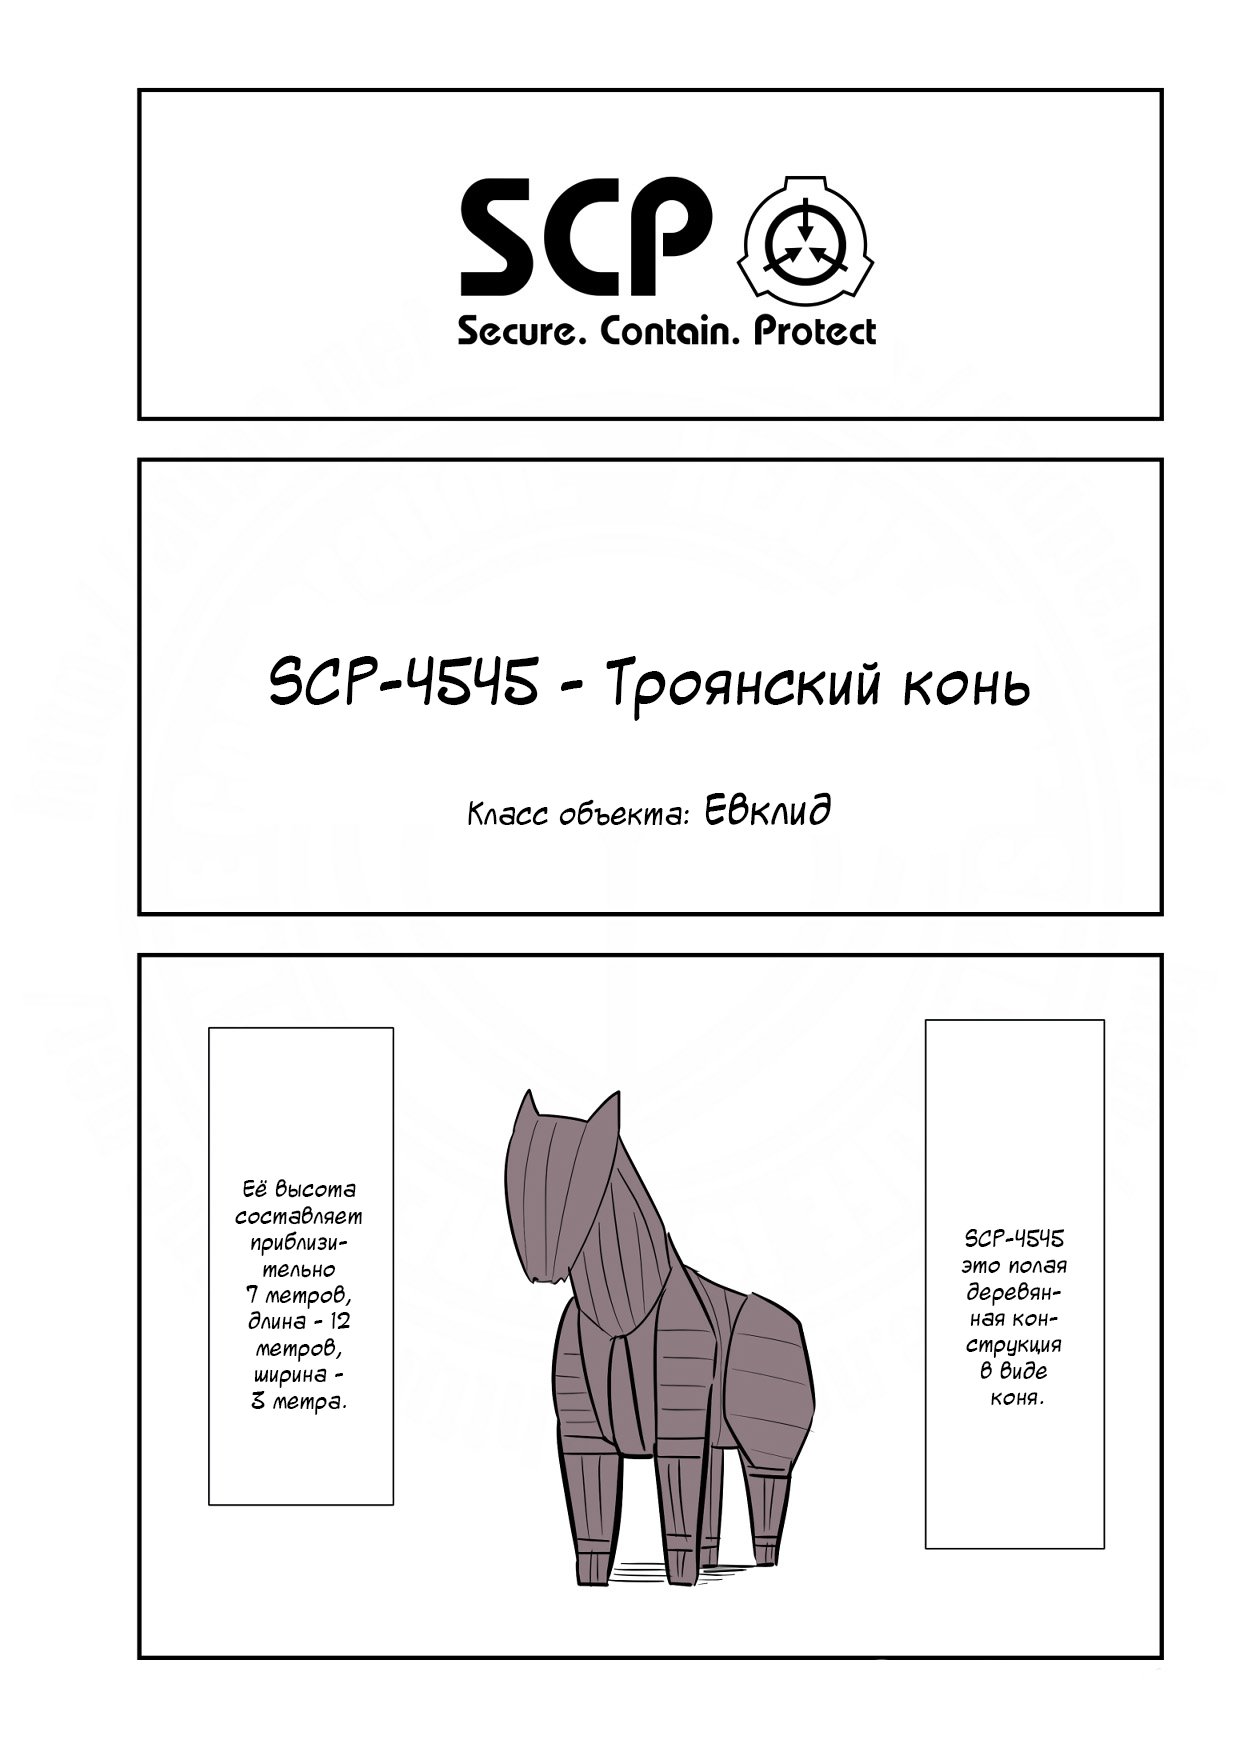 Упрощенный SCP 1 - 128 SCP-4545 - Троянский конь